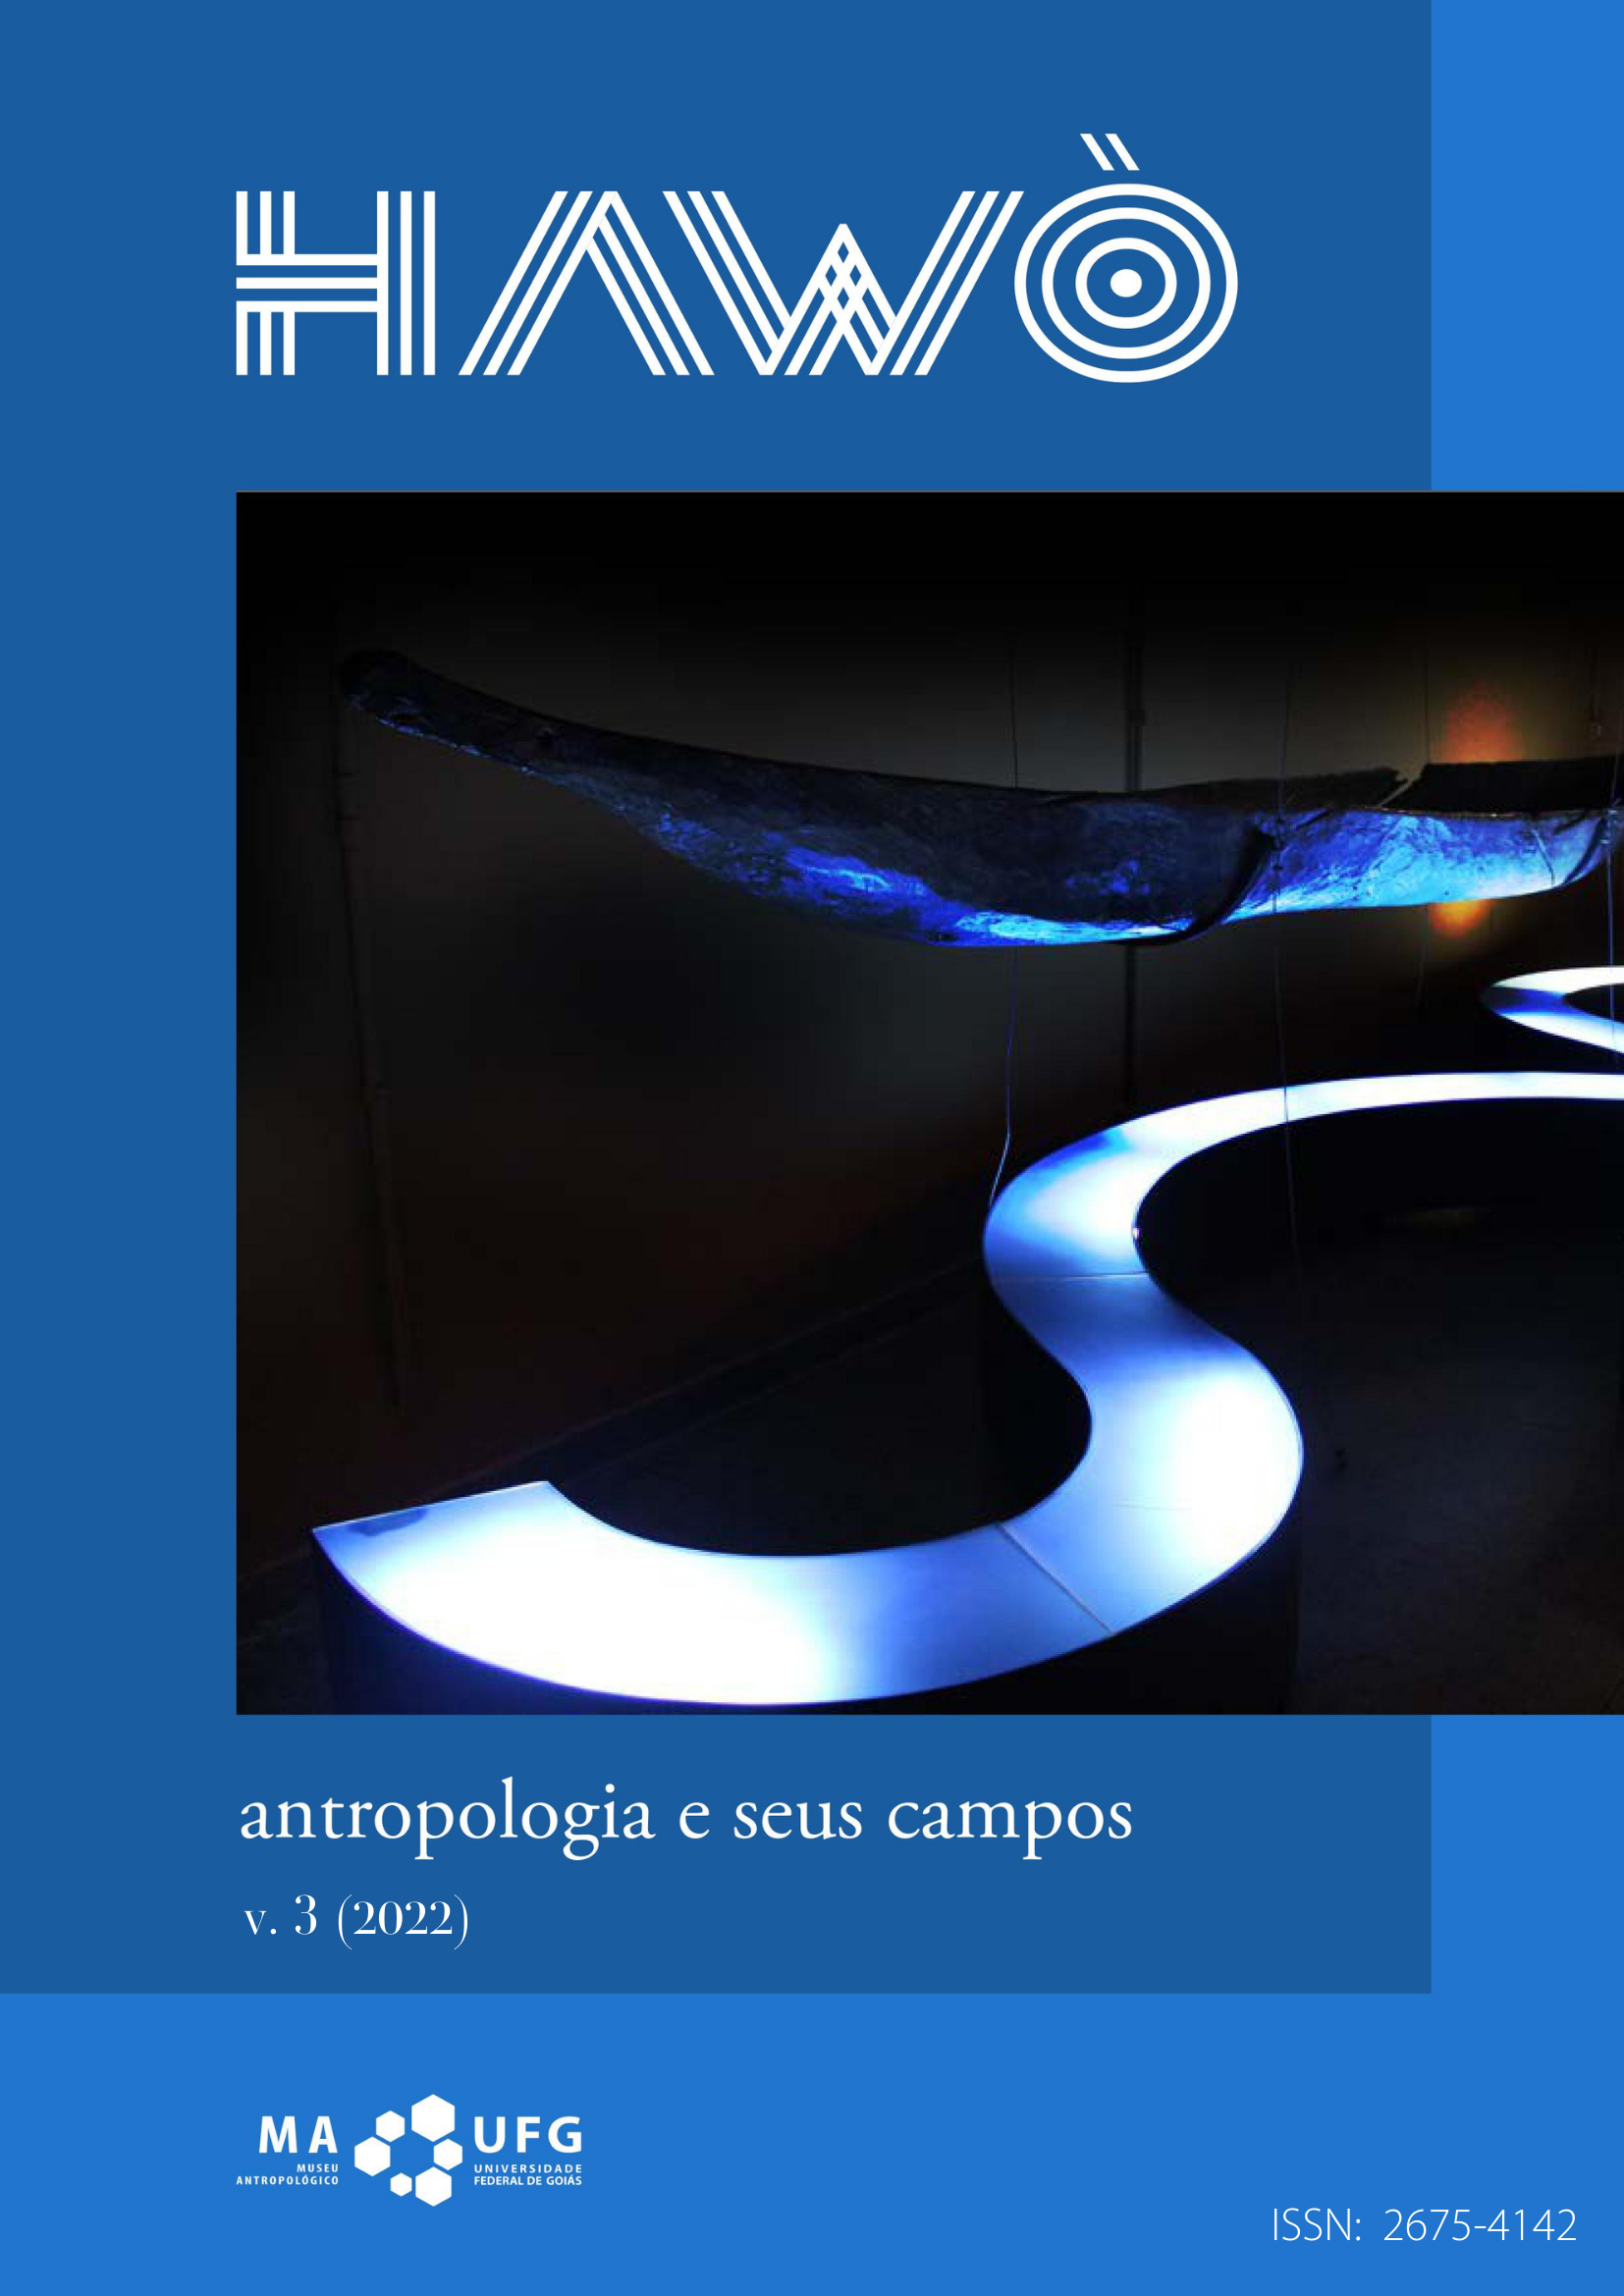 					Visualizar v. 3 (2022): Antropologia e seus campos
				